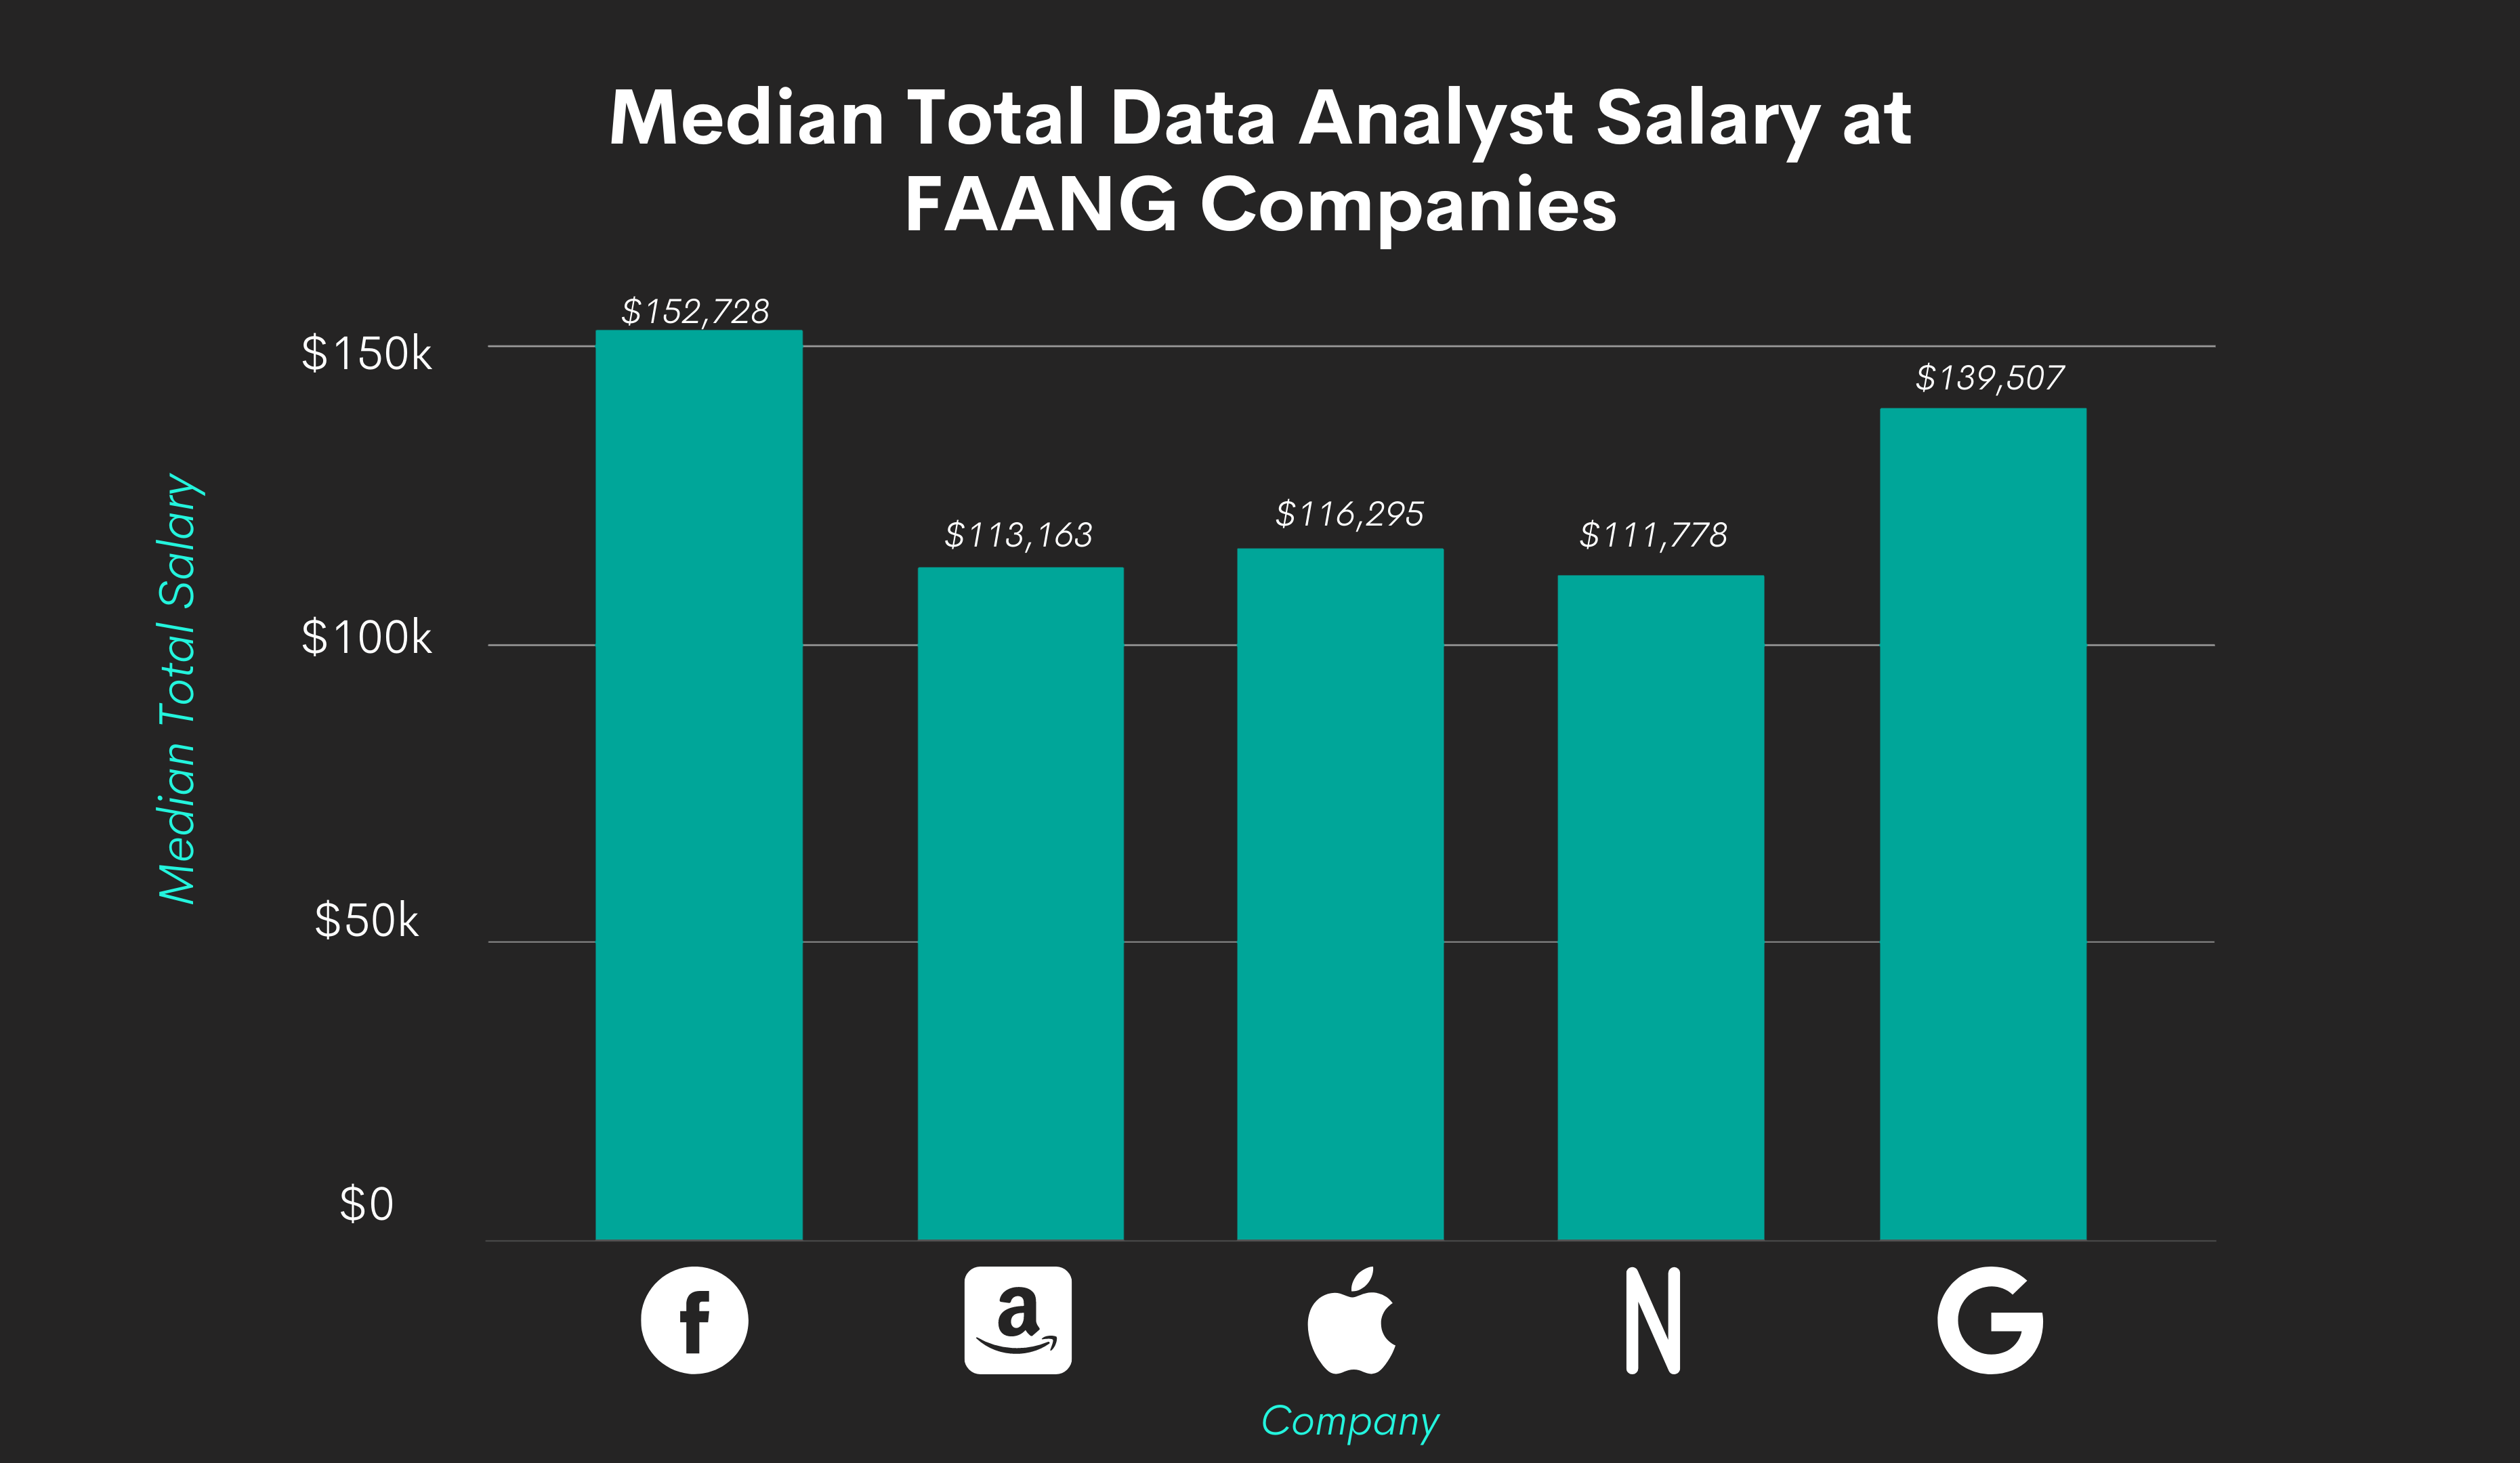 Data Analyst Salaries at FAANG Companies